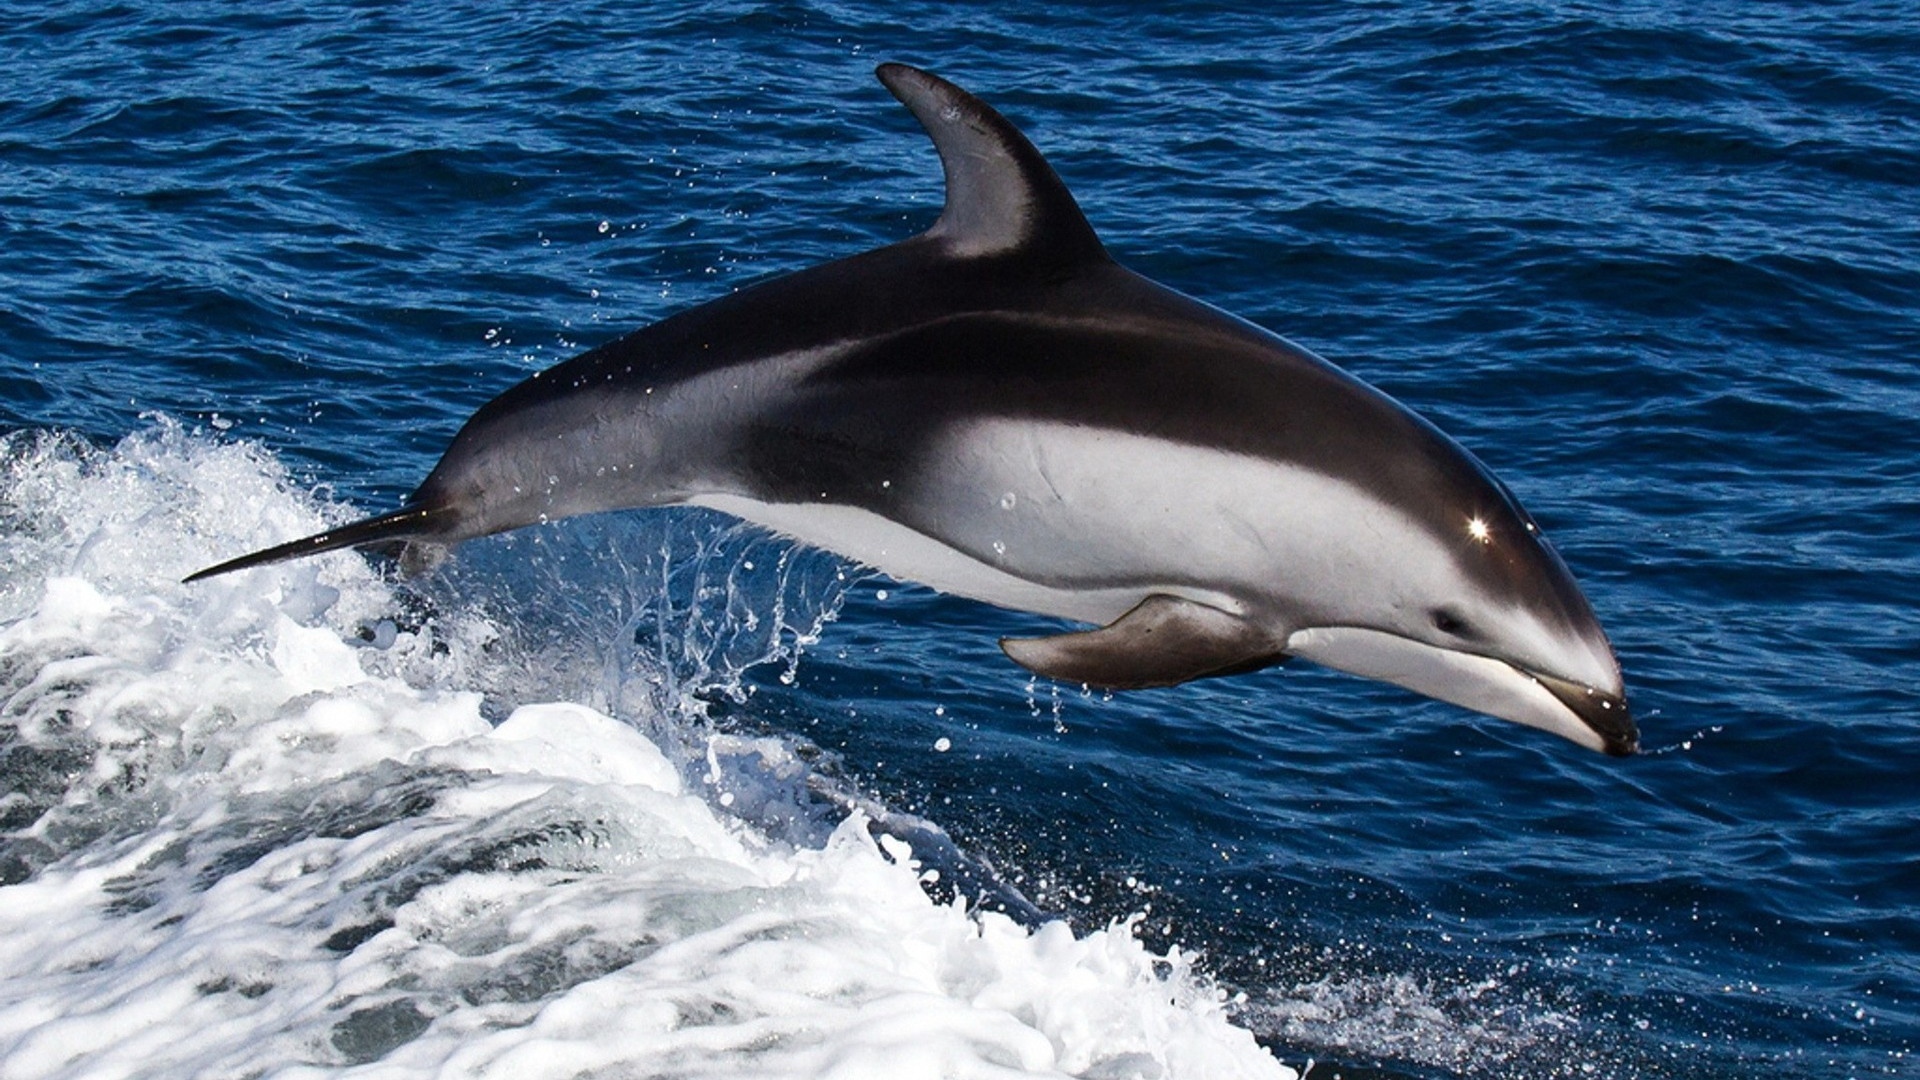 delfino wallpaper hd,delfino,delfino comune dal becco corto,mammifero marino,delfino di tursiope comune,delfino tursiope